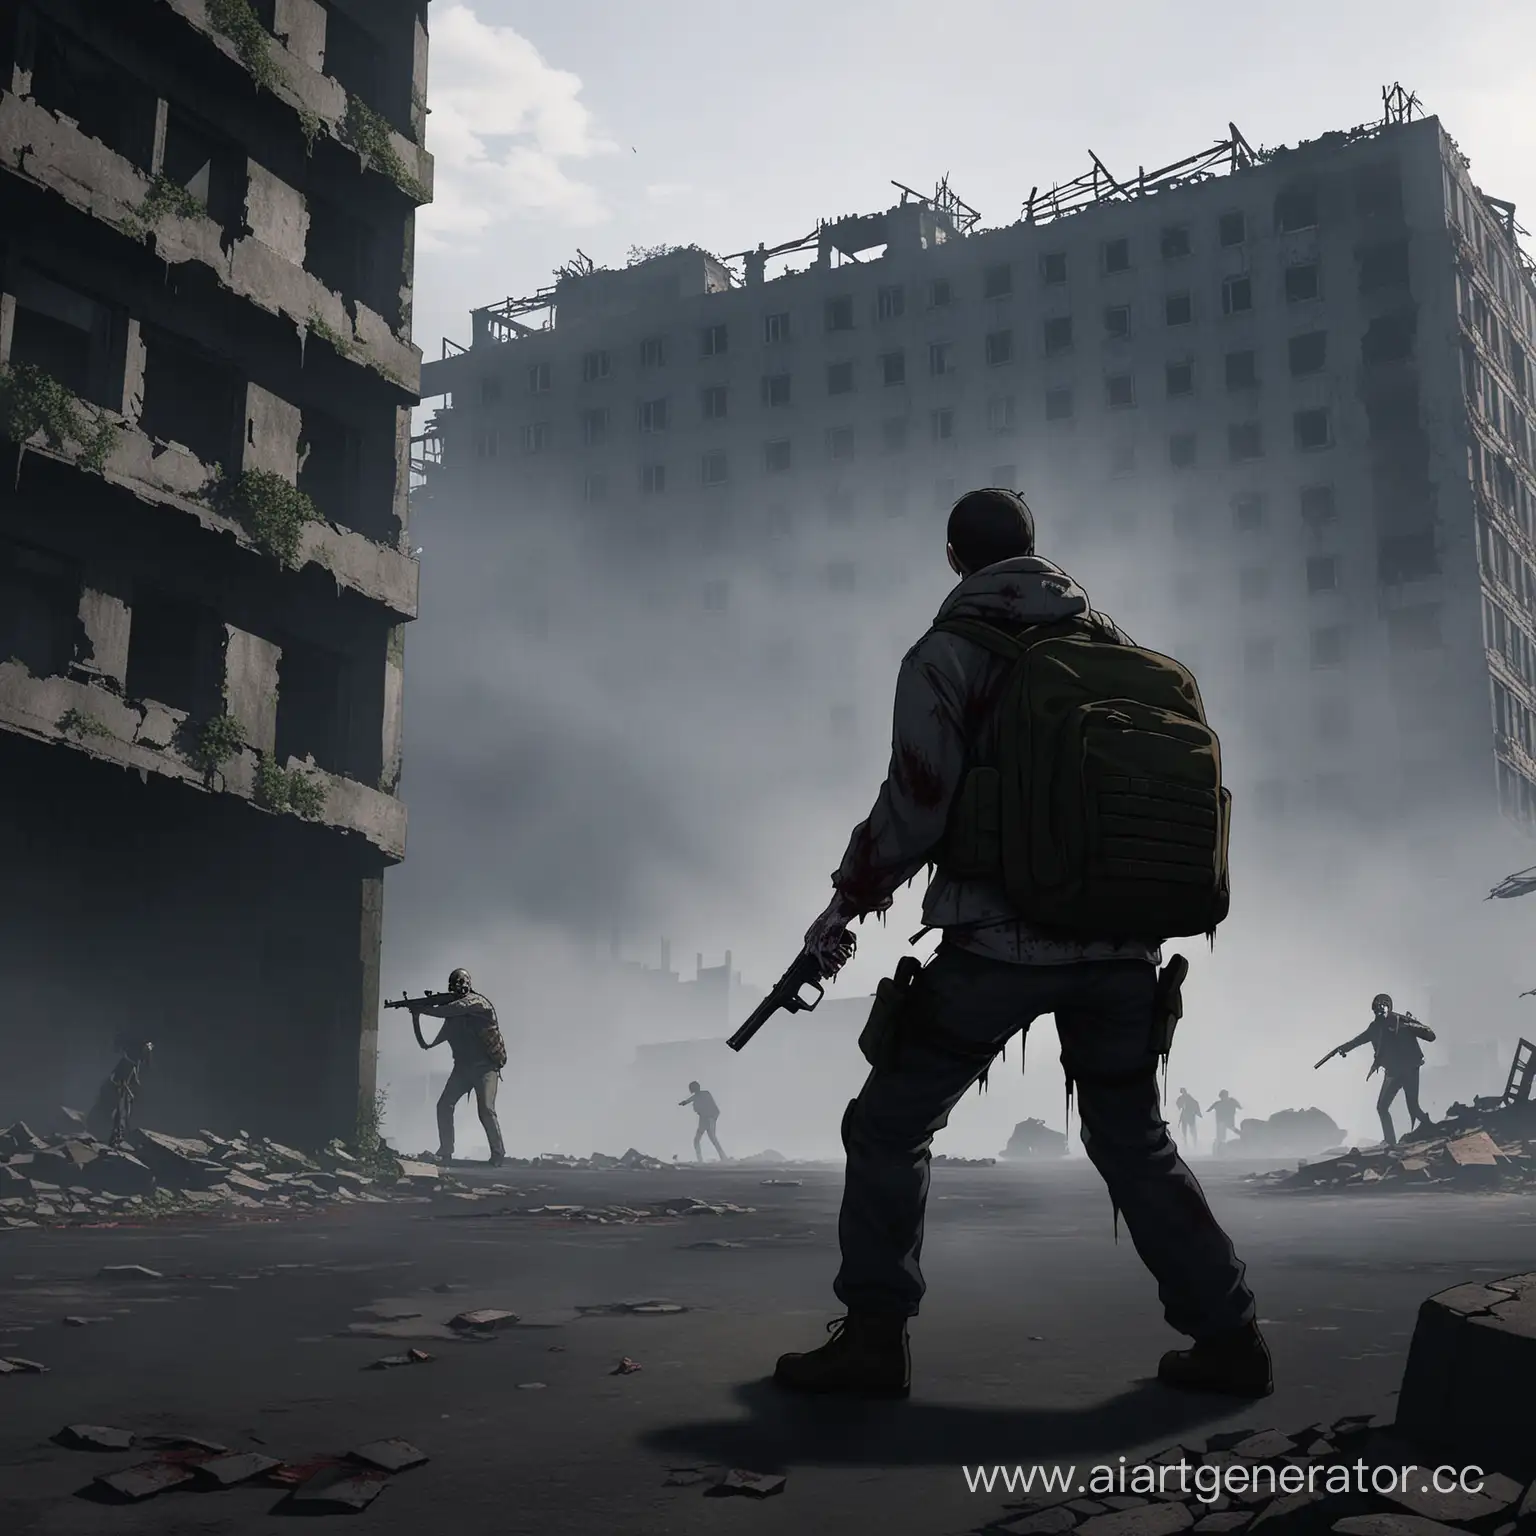 картинка для превью видеоролика на ютуб по игре DAYZ где на переднем фоне борется человек с зомби на фоне городских развалин